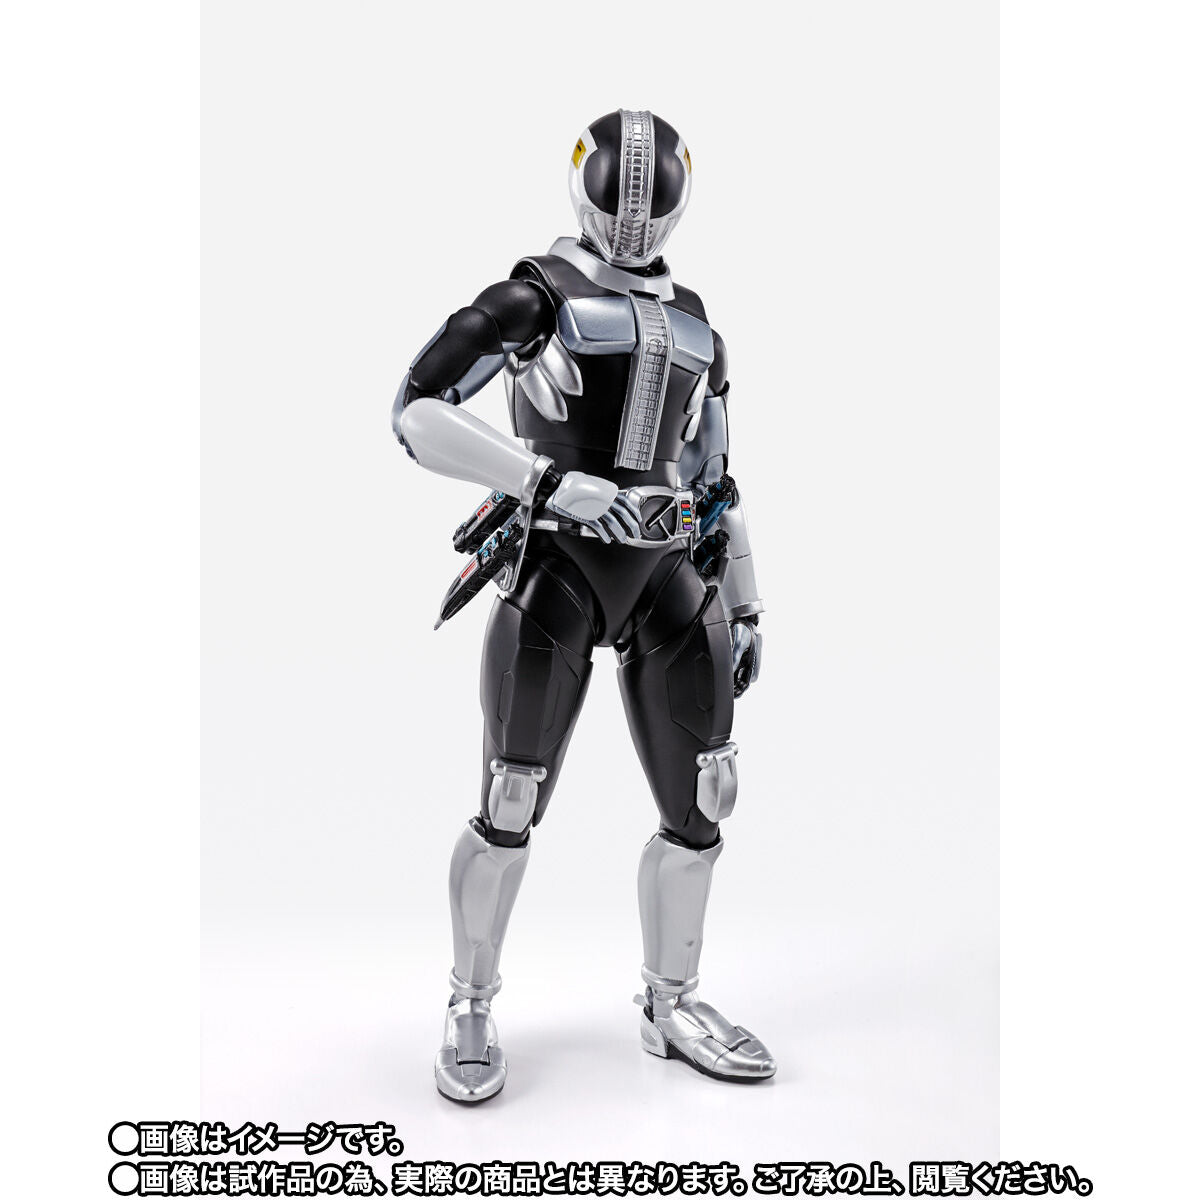 SH Figuarts Kamen Rider Den-O Plat Form K-Taros Version